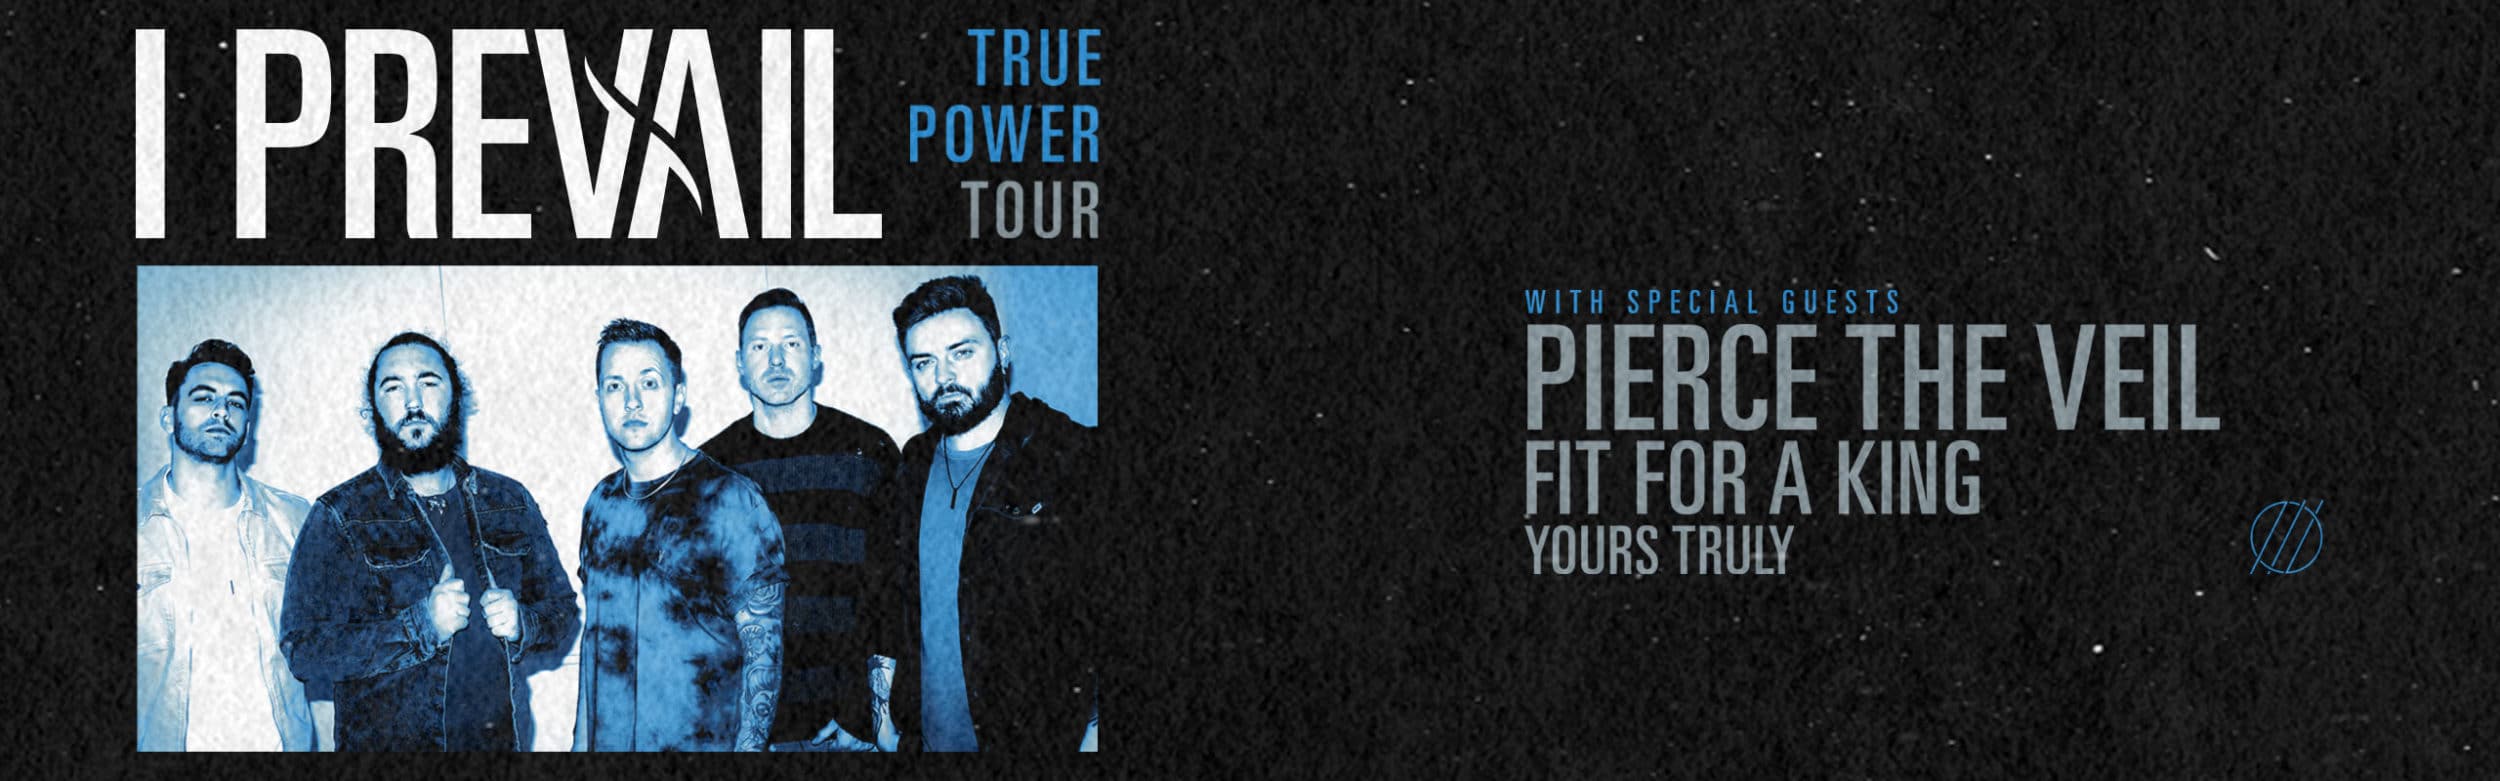 I Prevail: True Power Tour